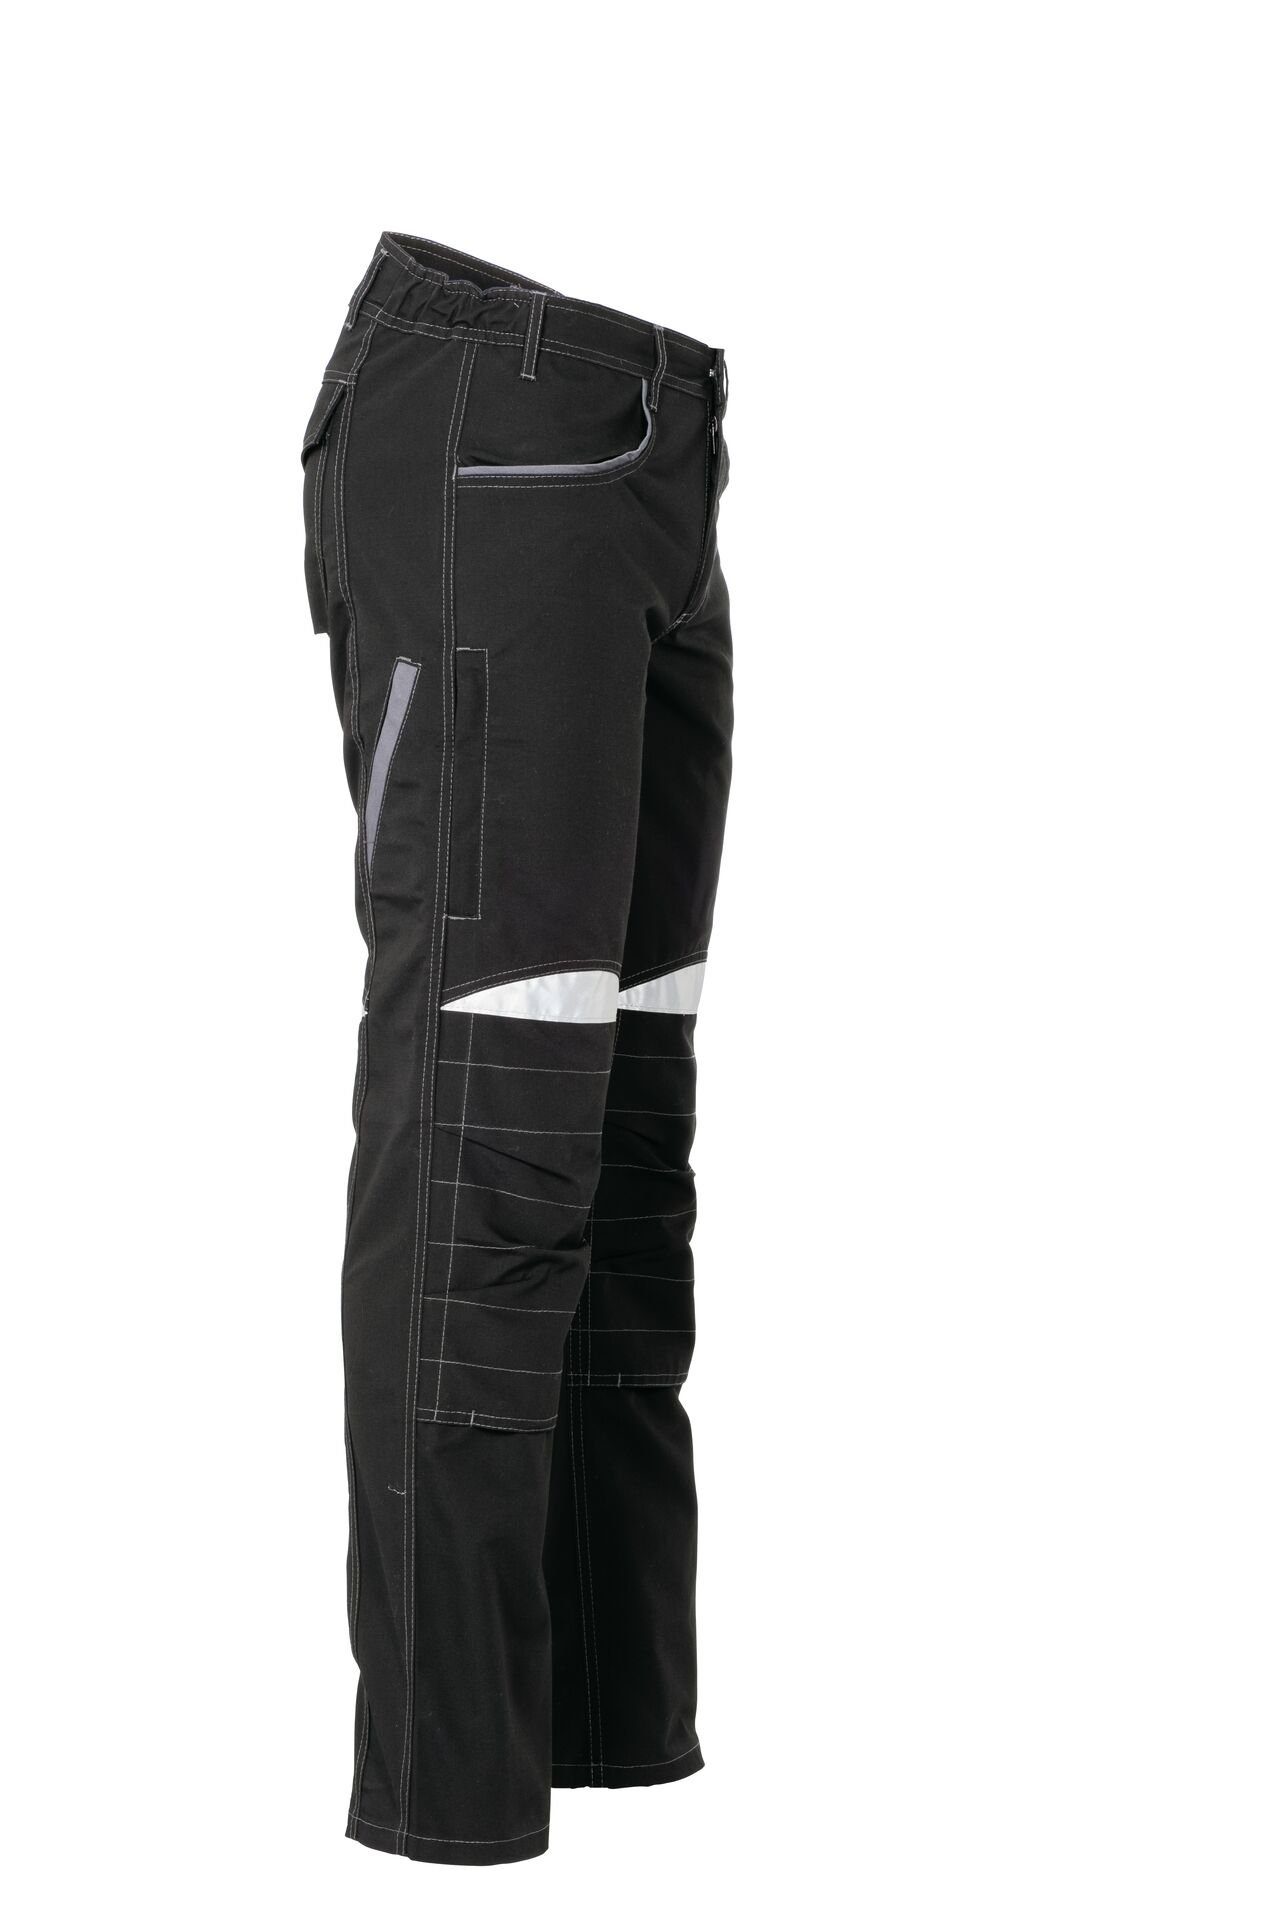 Arbeitshose Bundhose DuraWork Größe Planam (1-tlg) 62 schwarz/grau